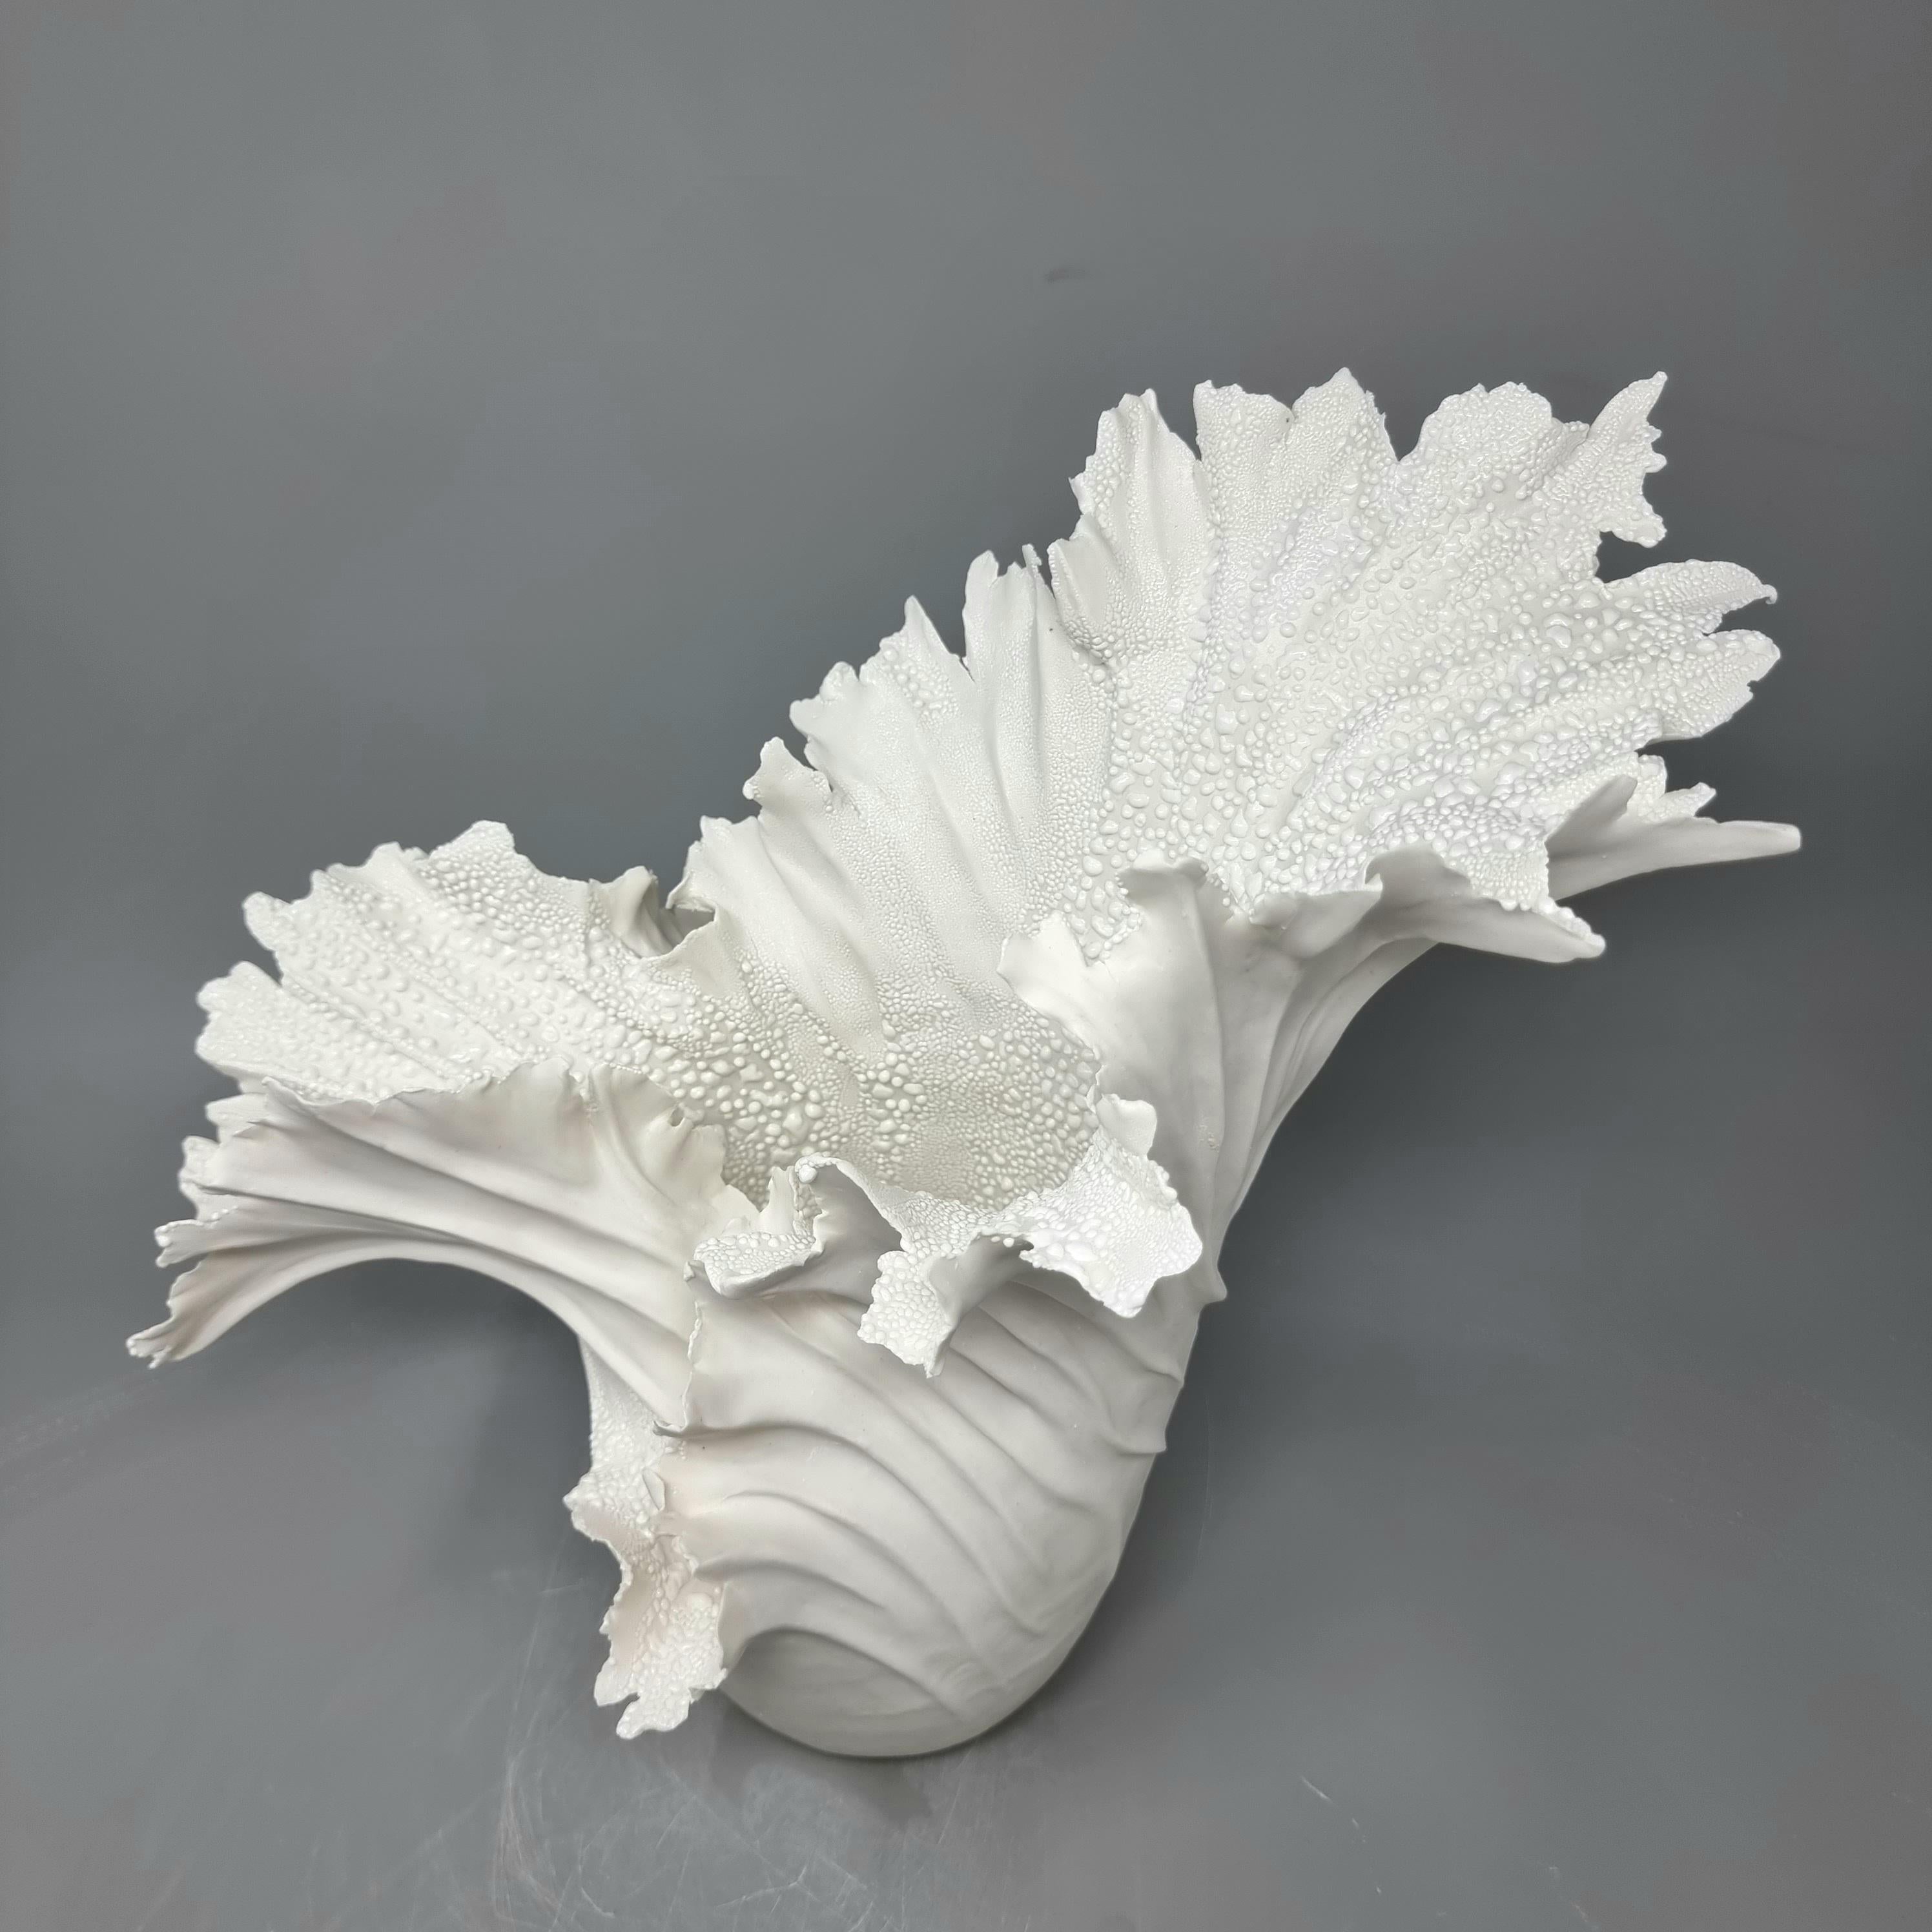 Danish Paper Porcelain Sculpture // 155